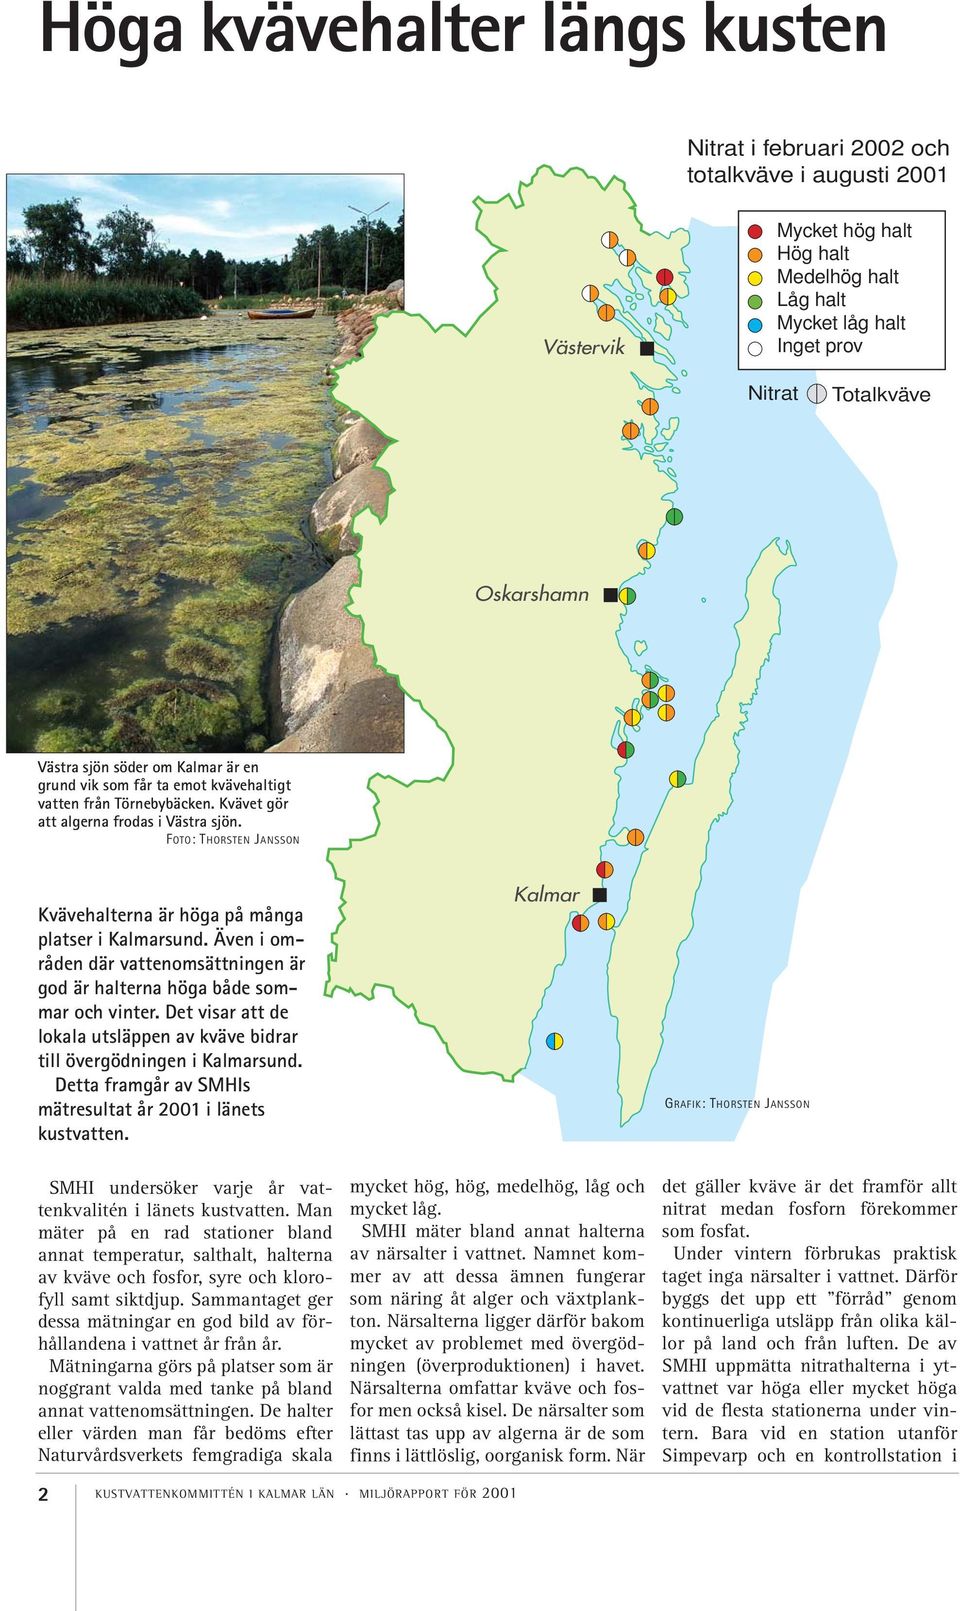 Även i områden där vattenomsättningen är god är halterna höga både sommar och vinter. Det visar att de lokala utsläppen av kväve bidrar till övergödningen i Kalmarsund.